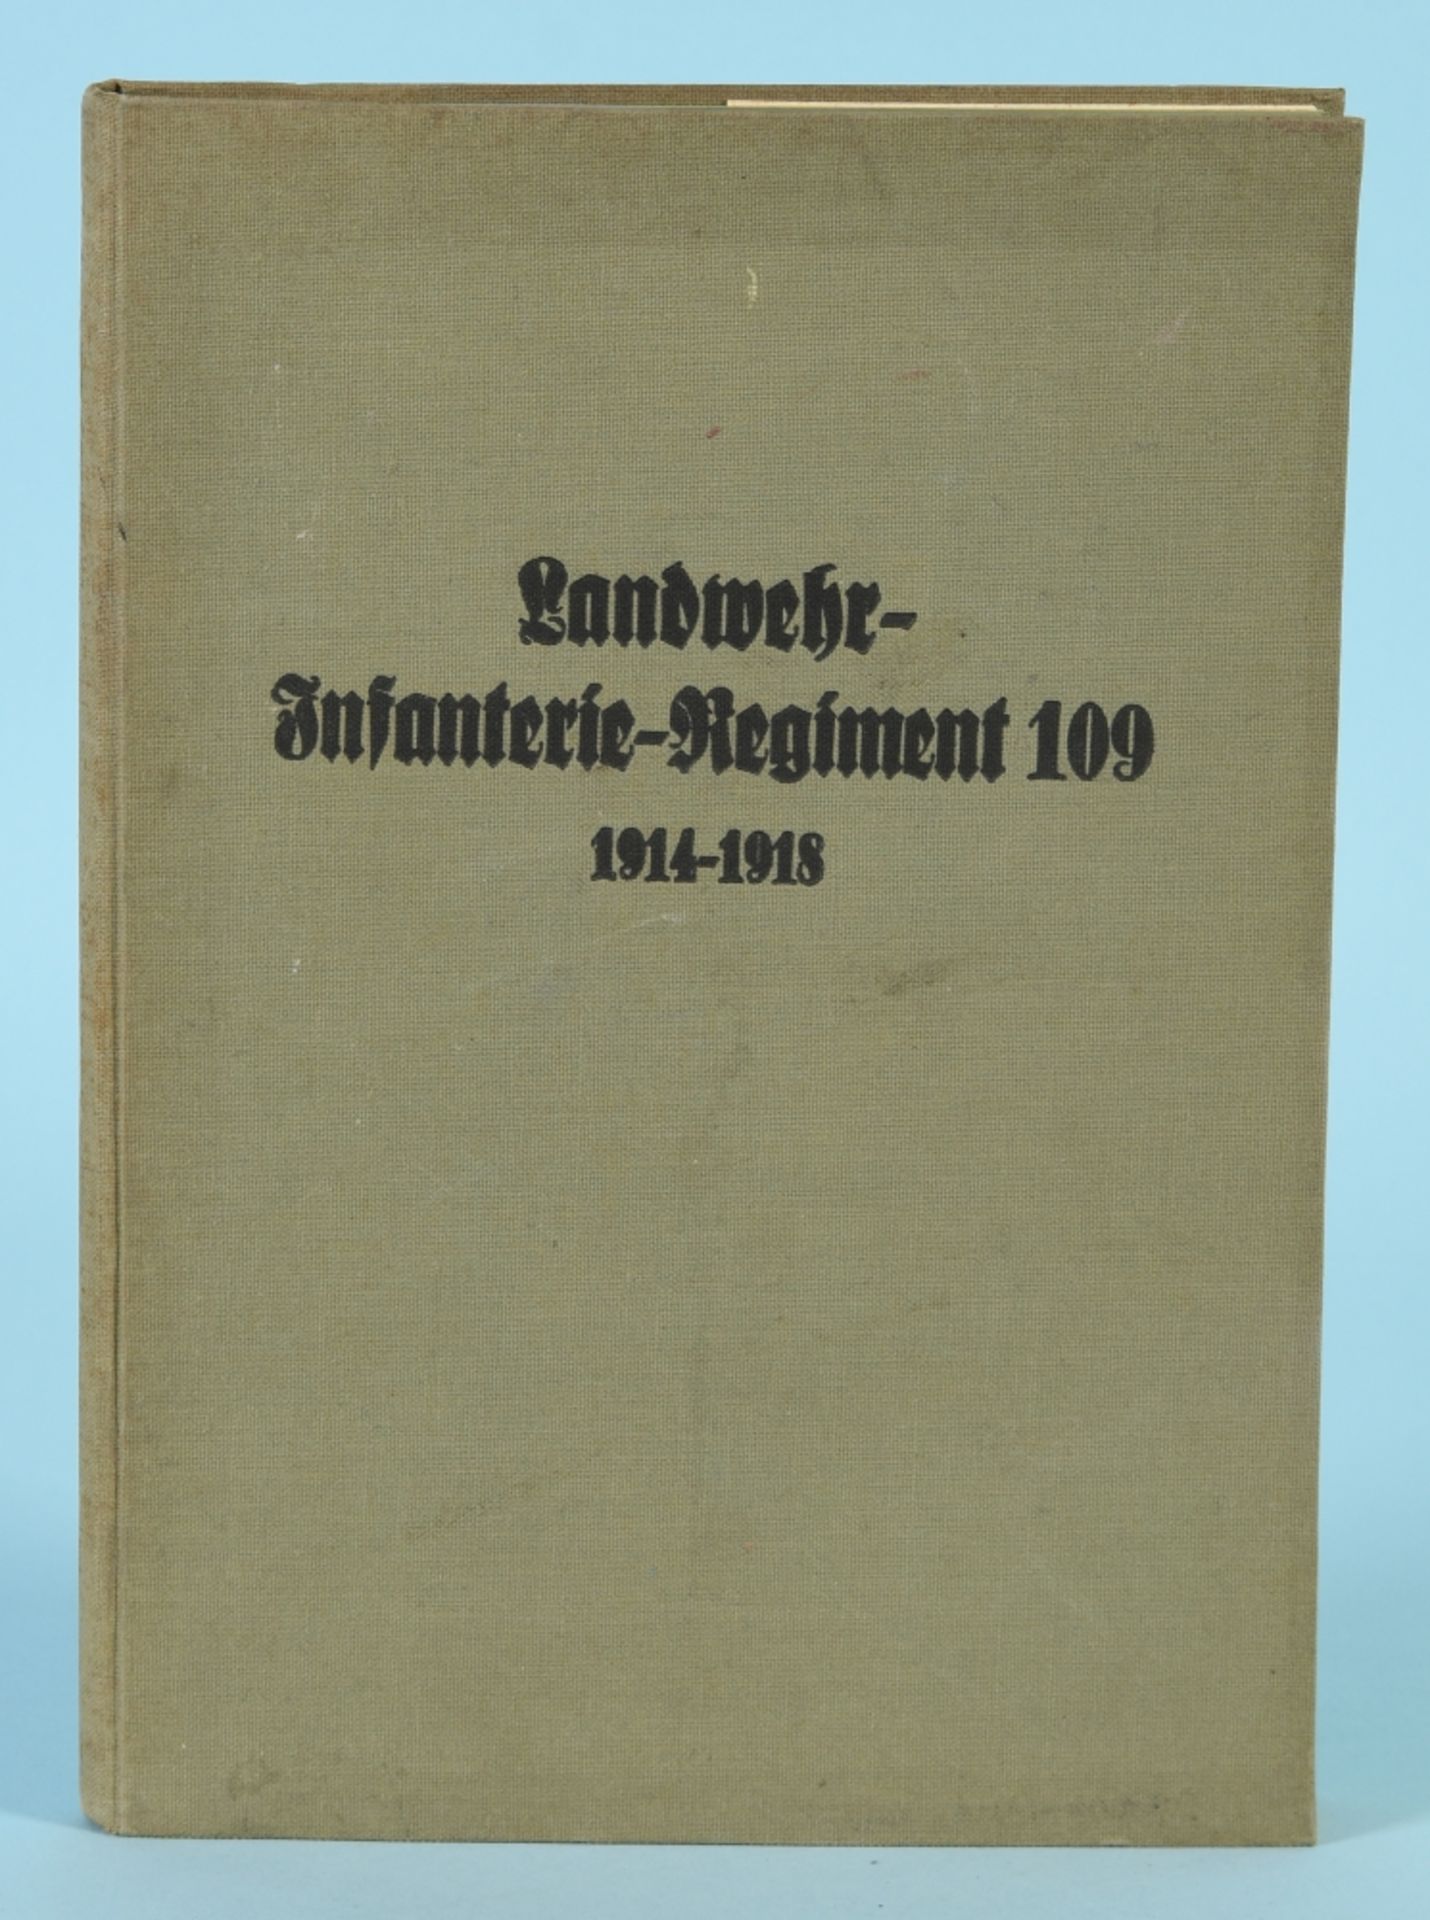 Wegele, Karl "Das Landwehr-Infanterie-Regiment Nr. 109 im Weltkriege 1914 bis 1918"